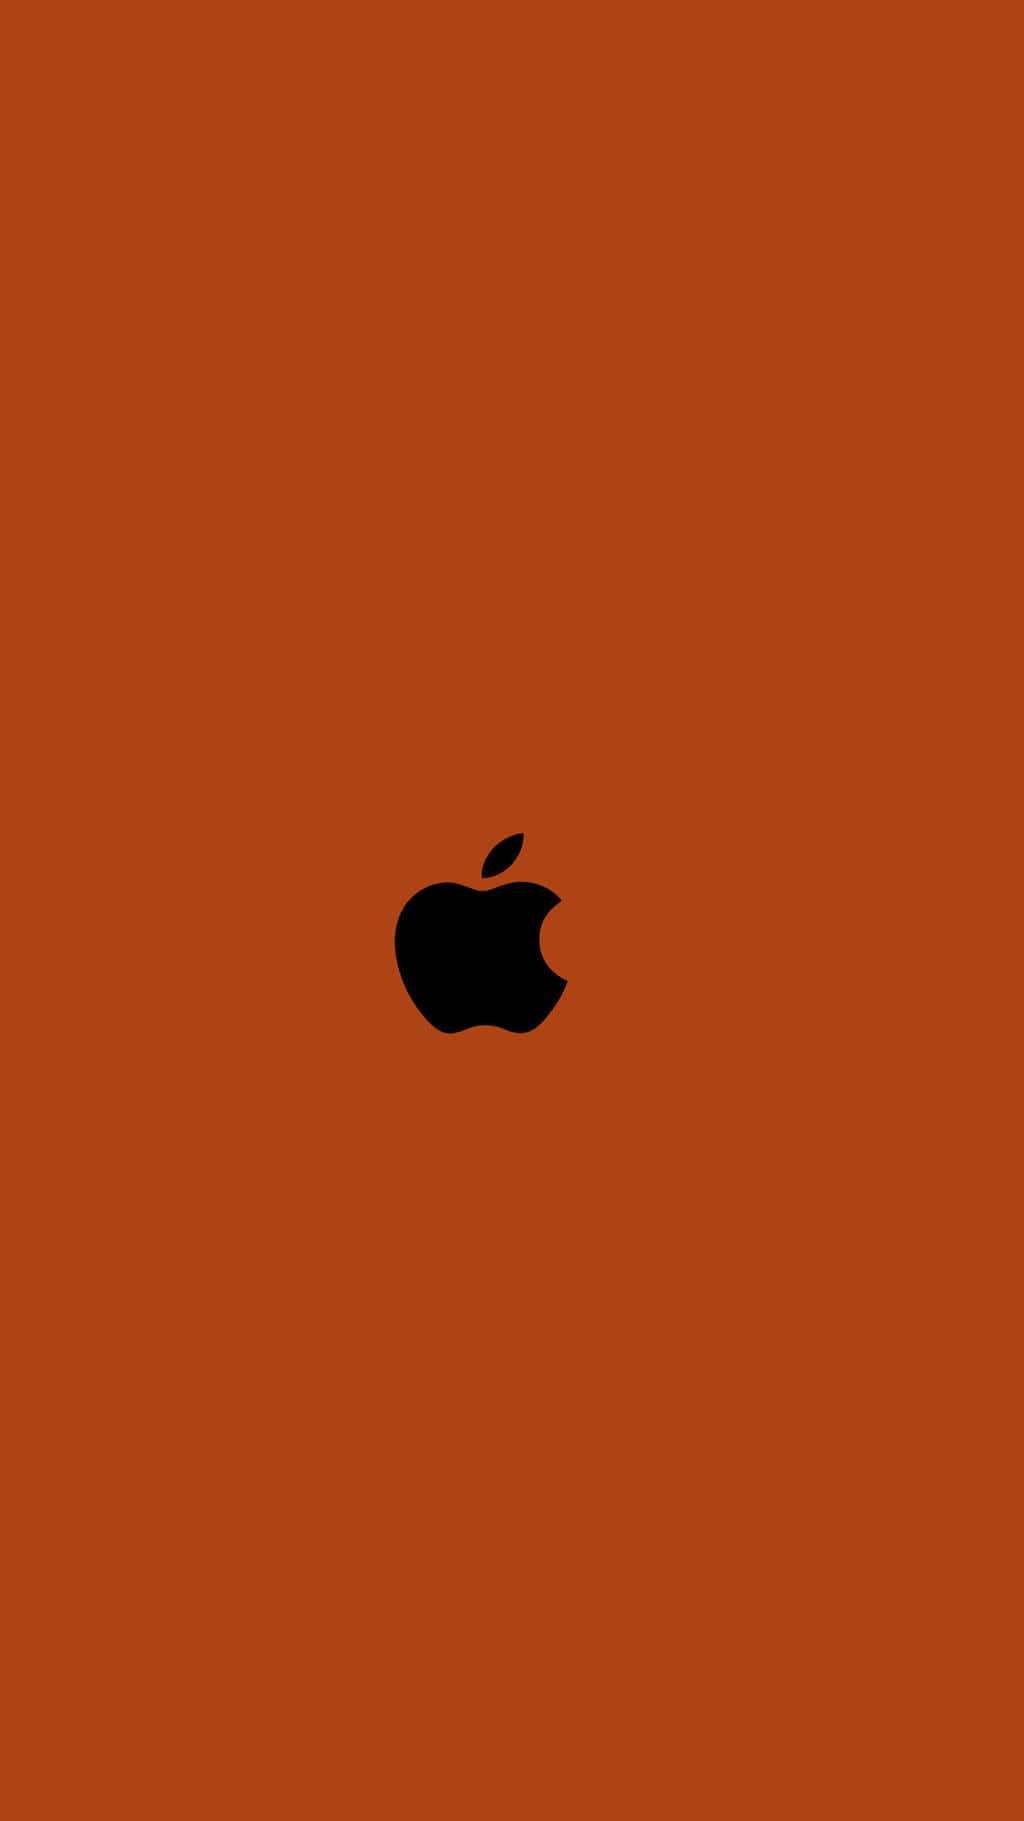 Fundolaranja Queimado Com Logo Da Apple.